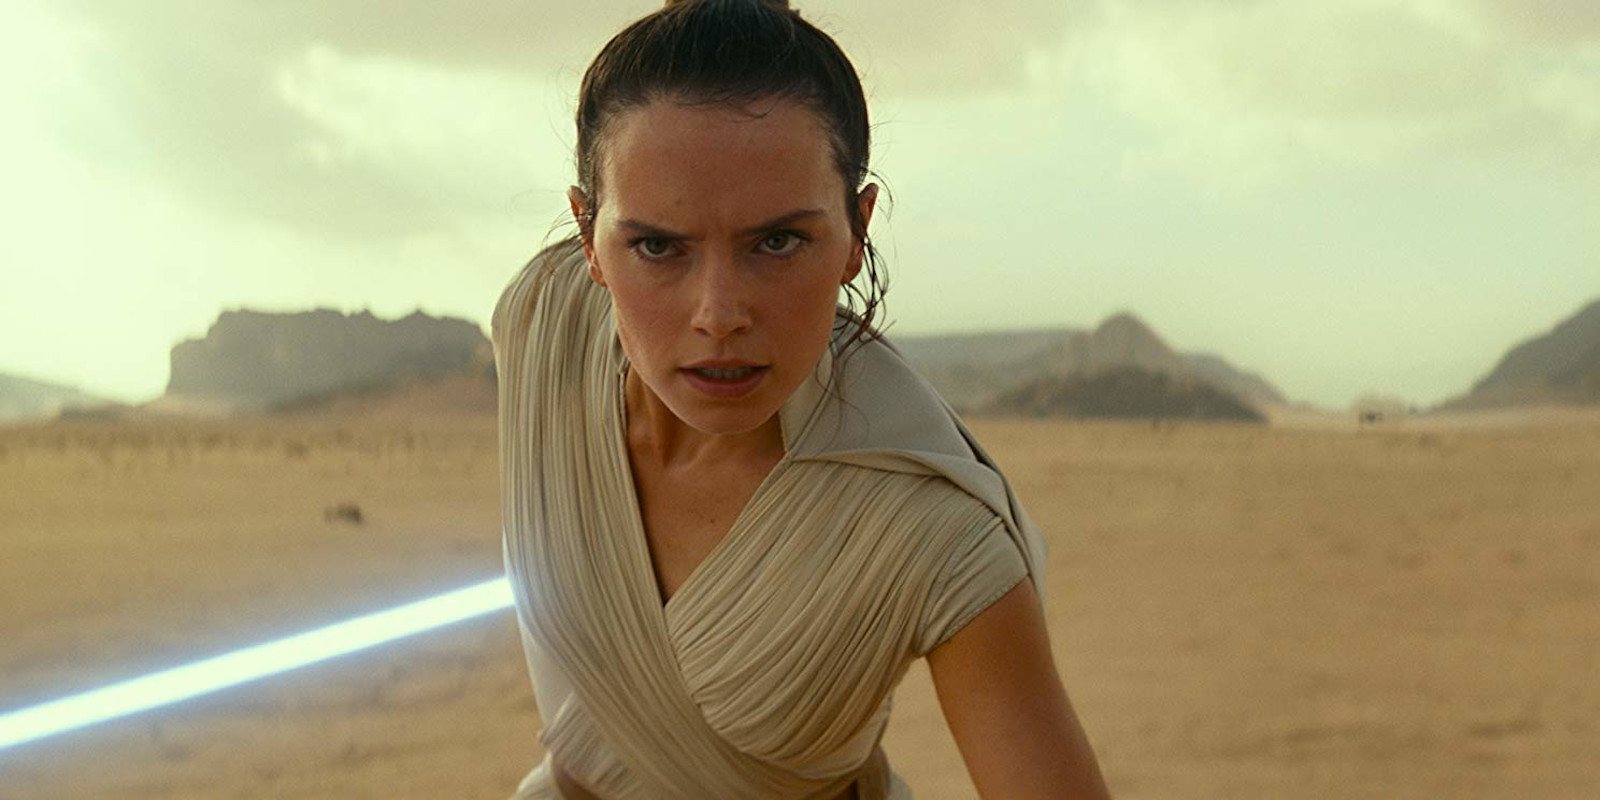 Filtrado el guion original de 'Star Wars: Episodio IX': 'Duel of the Fates'